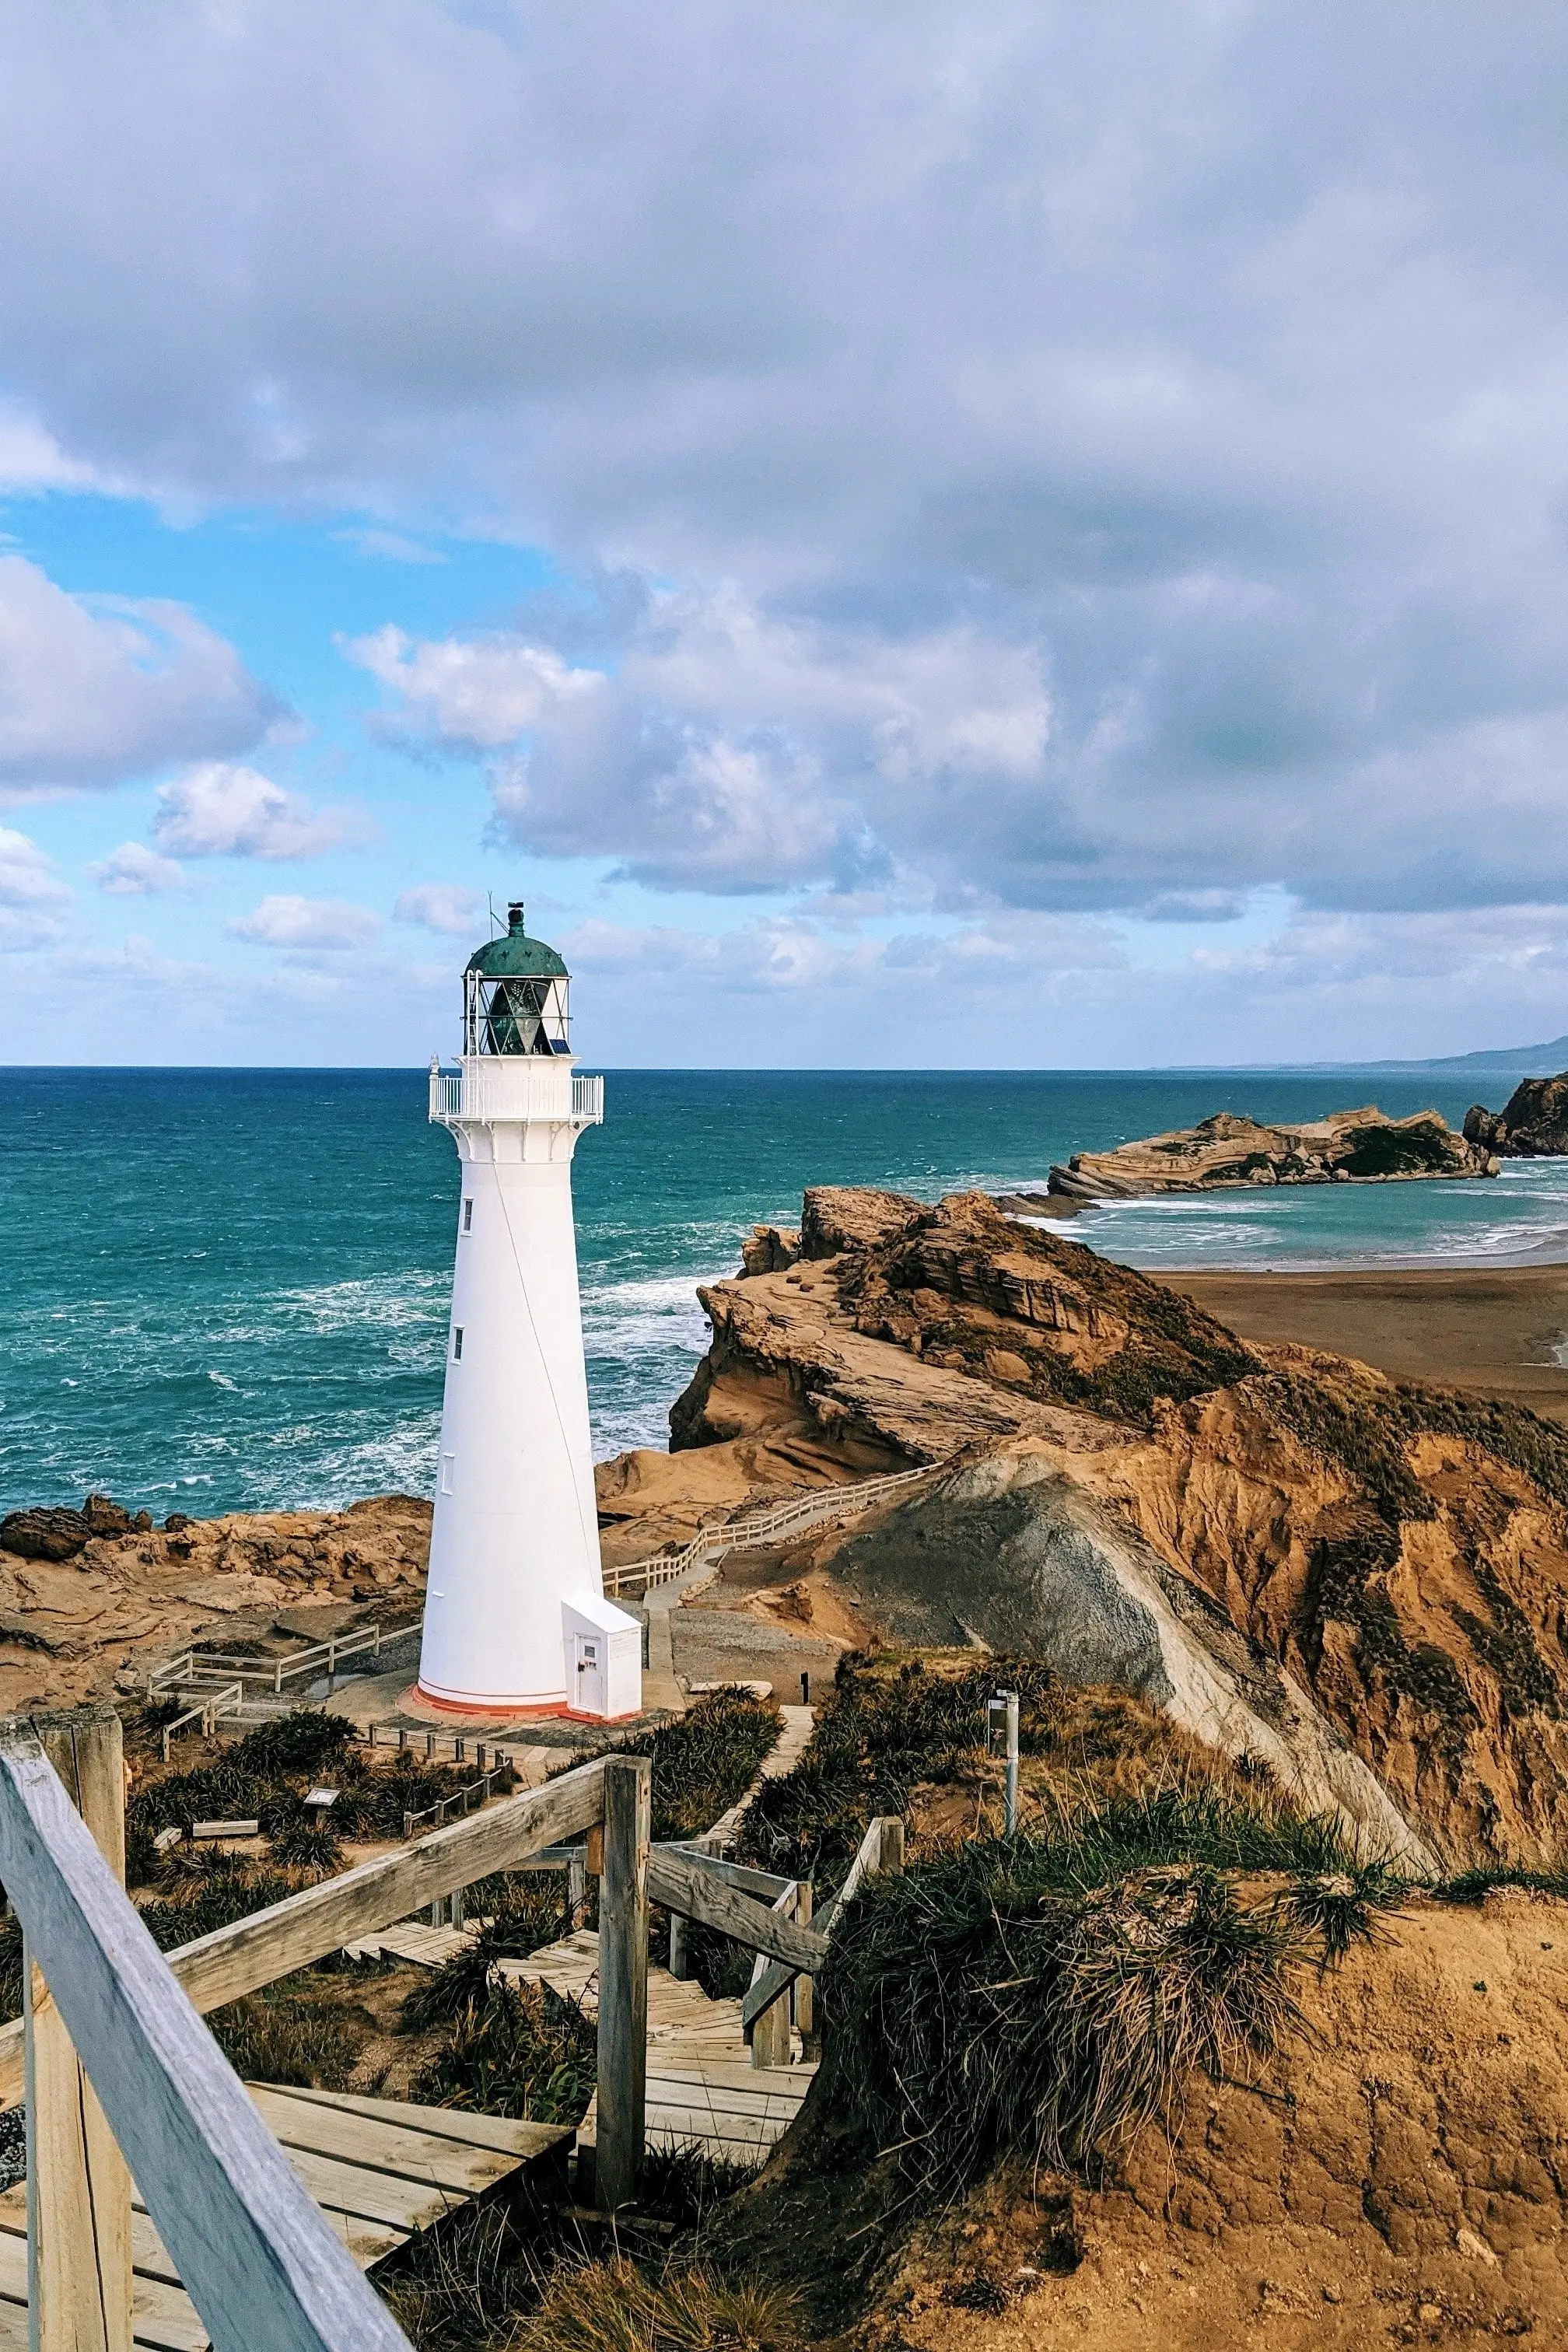 Lighthouse near beach